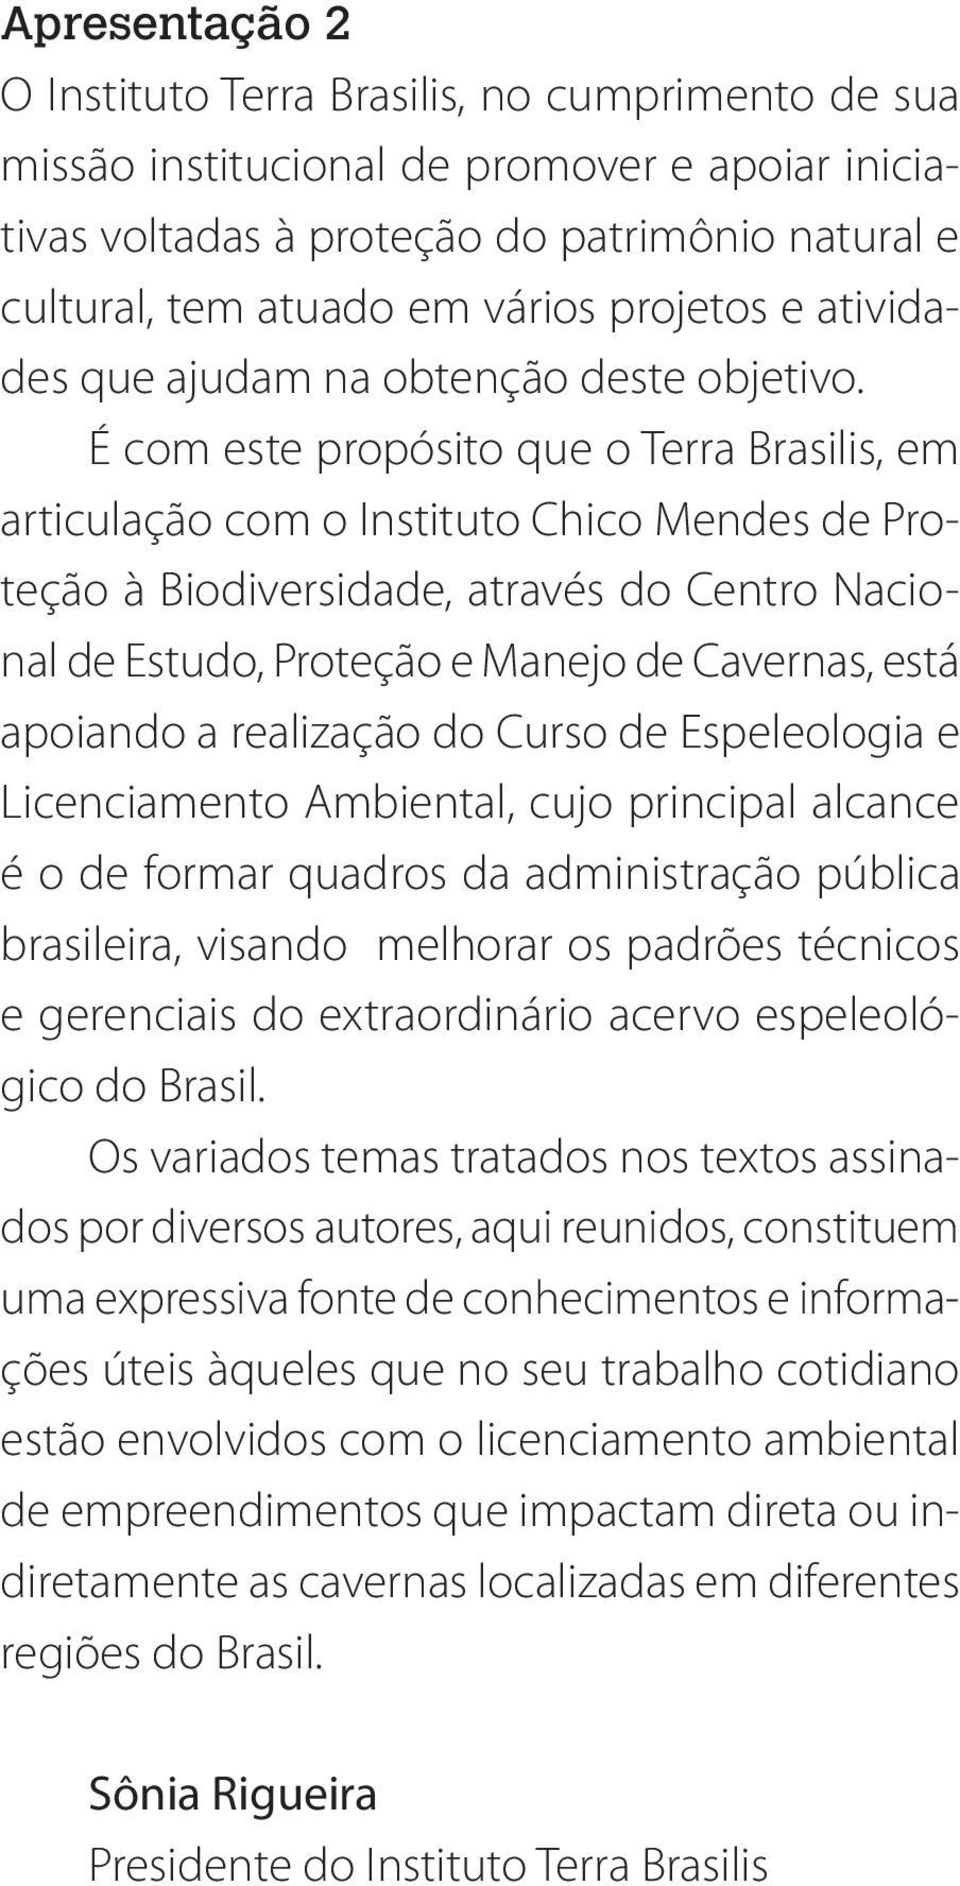 É com este propósito que o Terra Brasilis, em articulação com o Instituto Chico Mendes de Proteção à Biodiversidade, através do Centro Nacional de Estudo, Proteção e Manejo de Cavernas, está apoiando